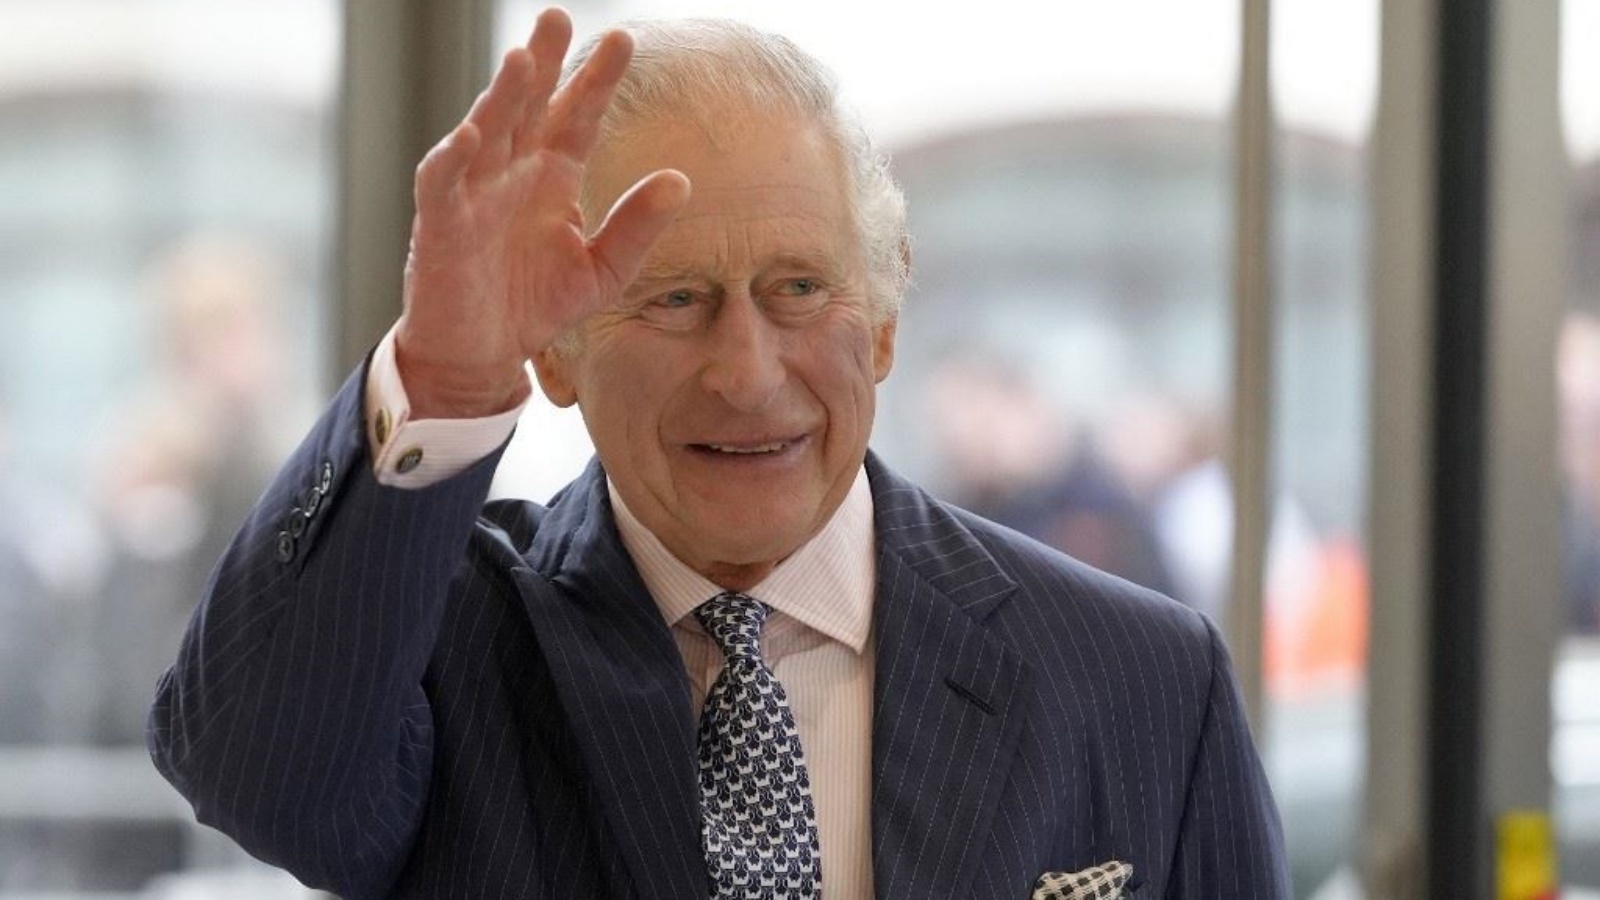 الملك تشارلز الثالث يخضع لعلاج السرطان منذ فبراير الماضي 